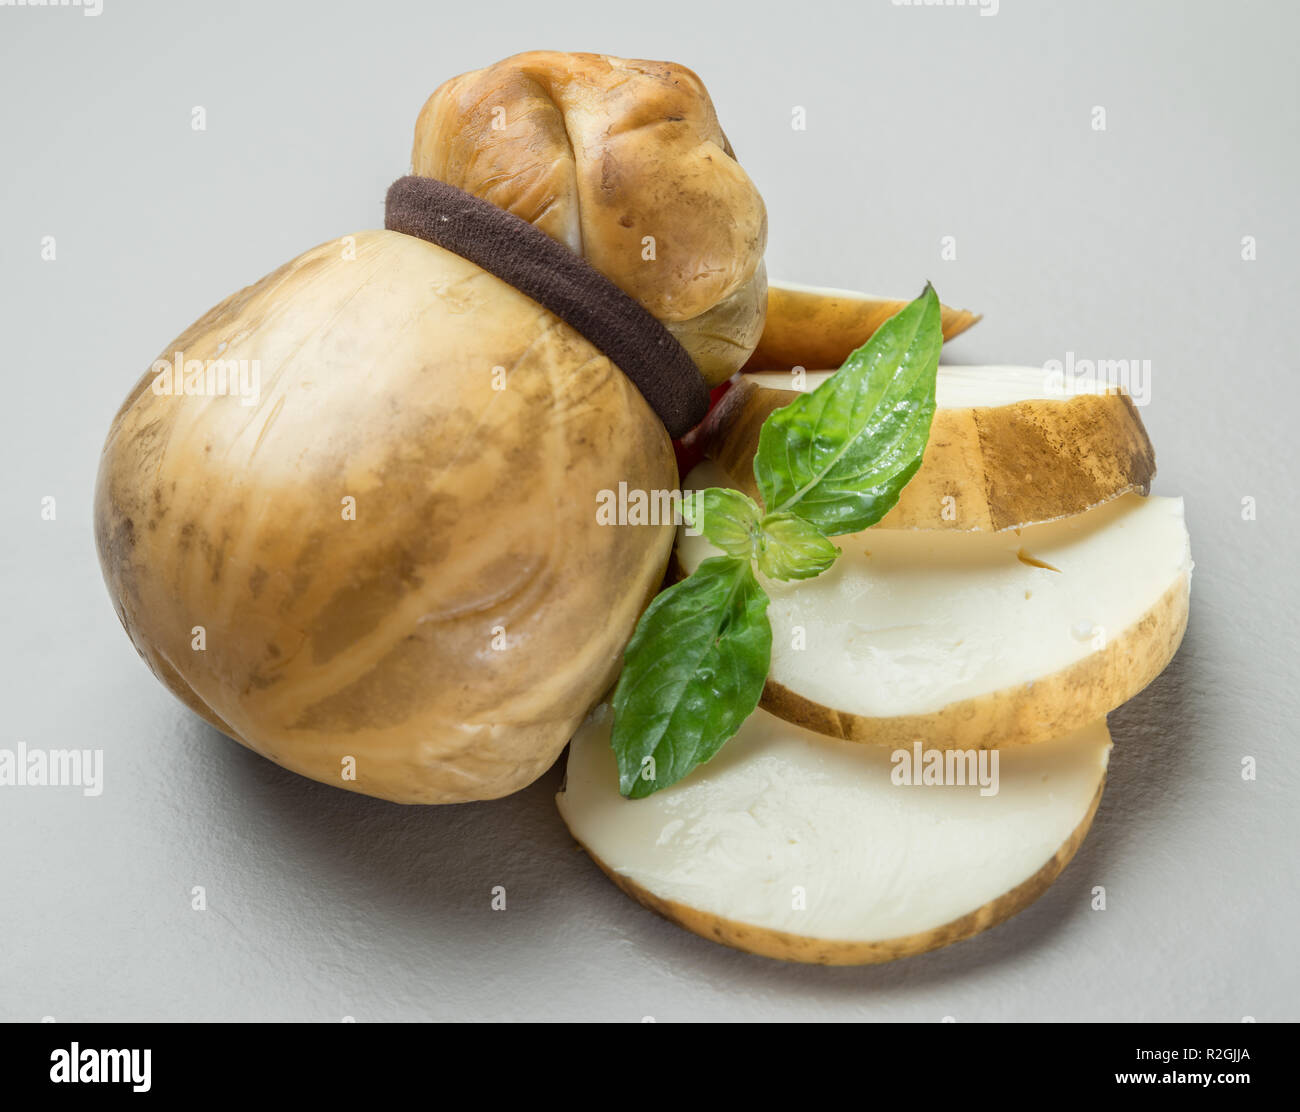 Traditionelle italienische geräuchert Scamorza Käse mit Kräutern auf grauem  Hintergrund Stockfotografie - Alamy